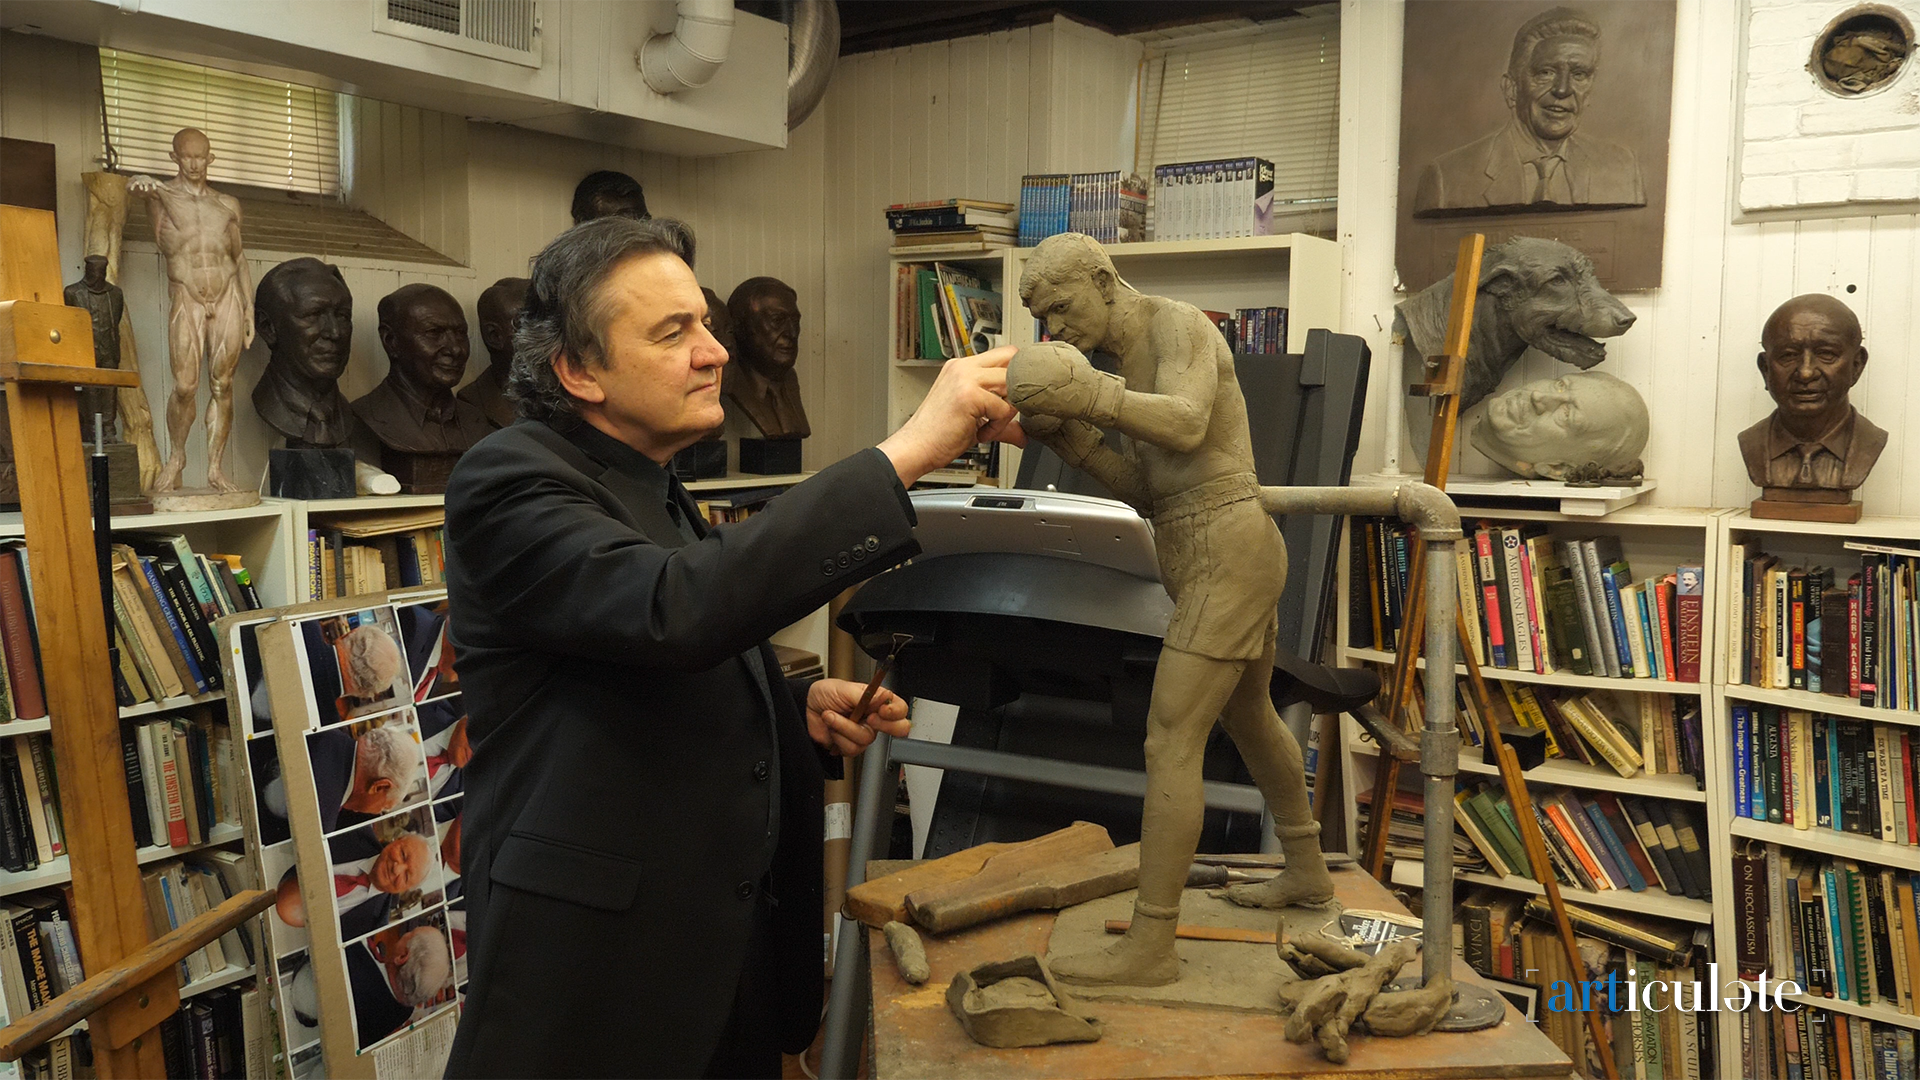  Sculptor Zenos in Frudakis Studio shown working on Braddock sculpture. 